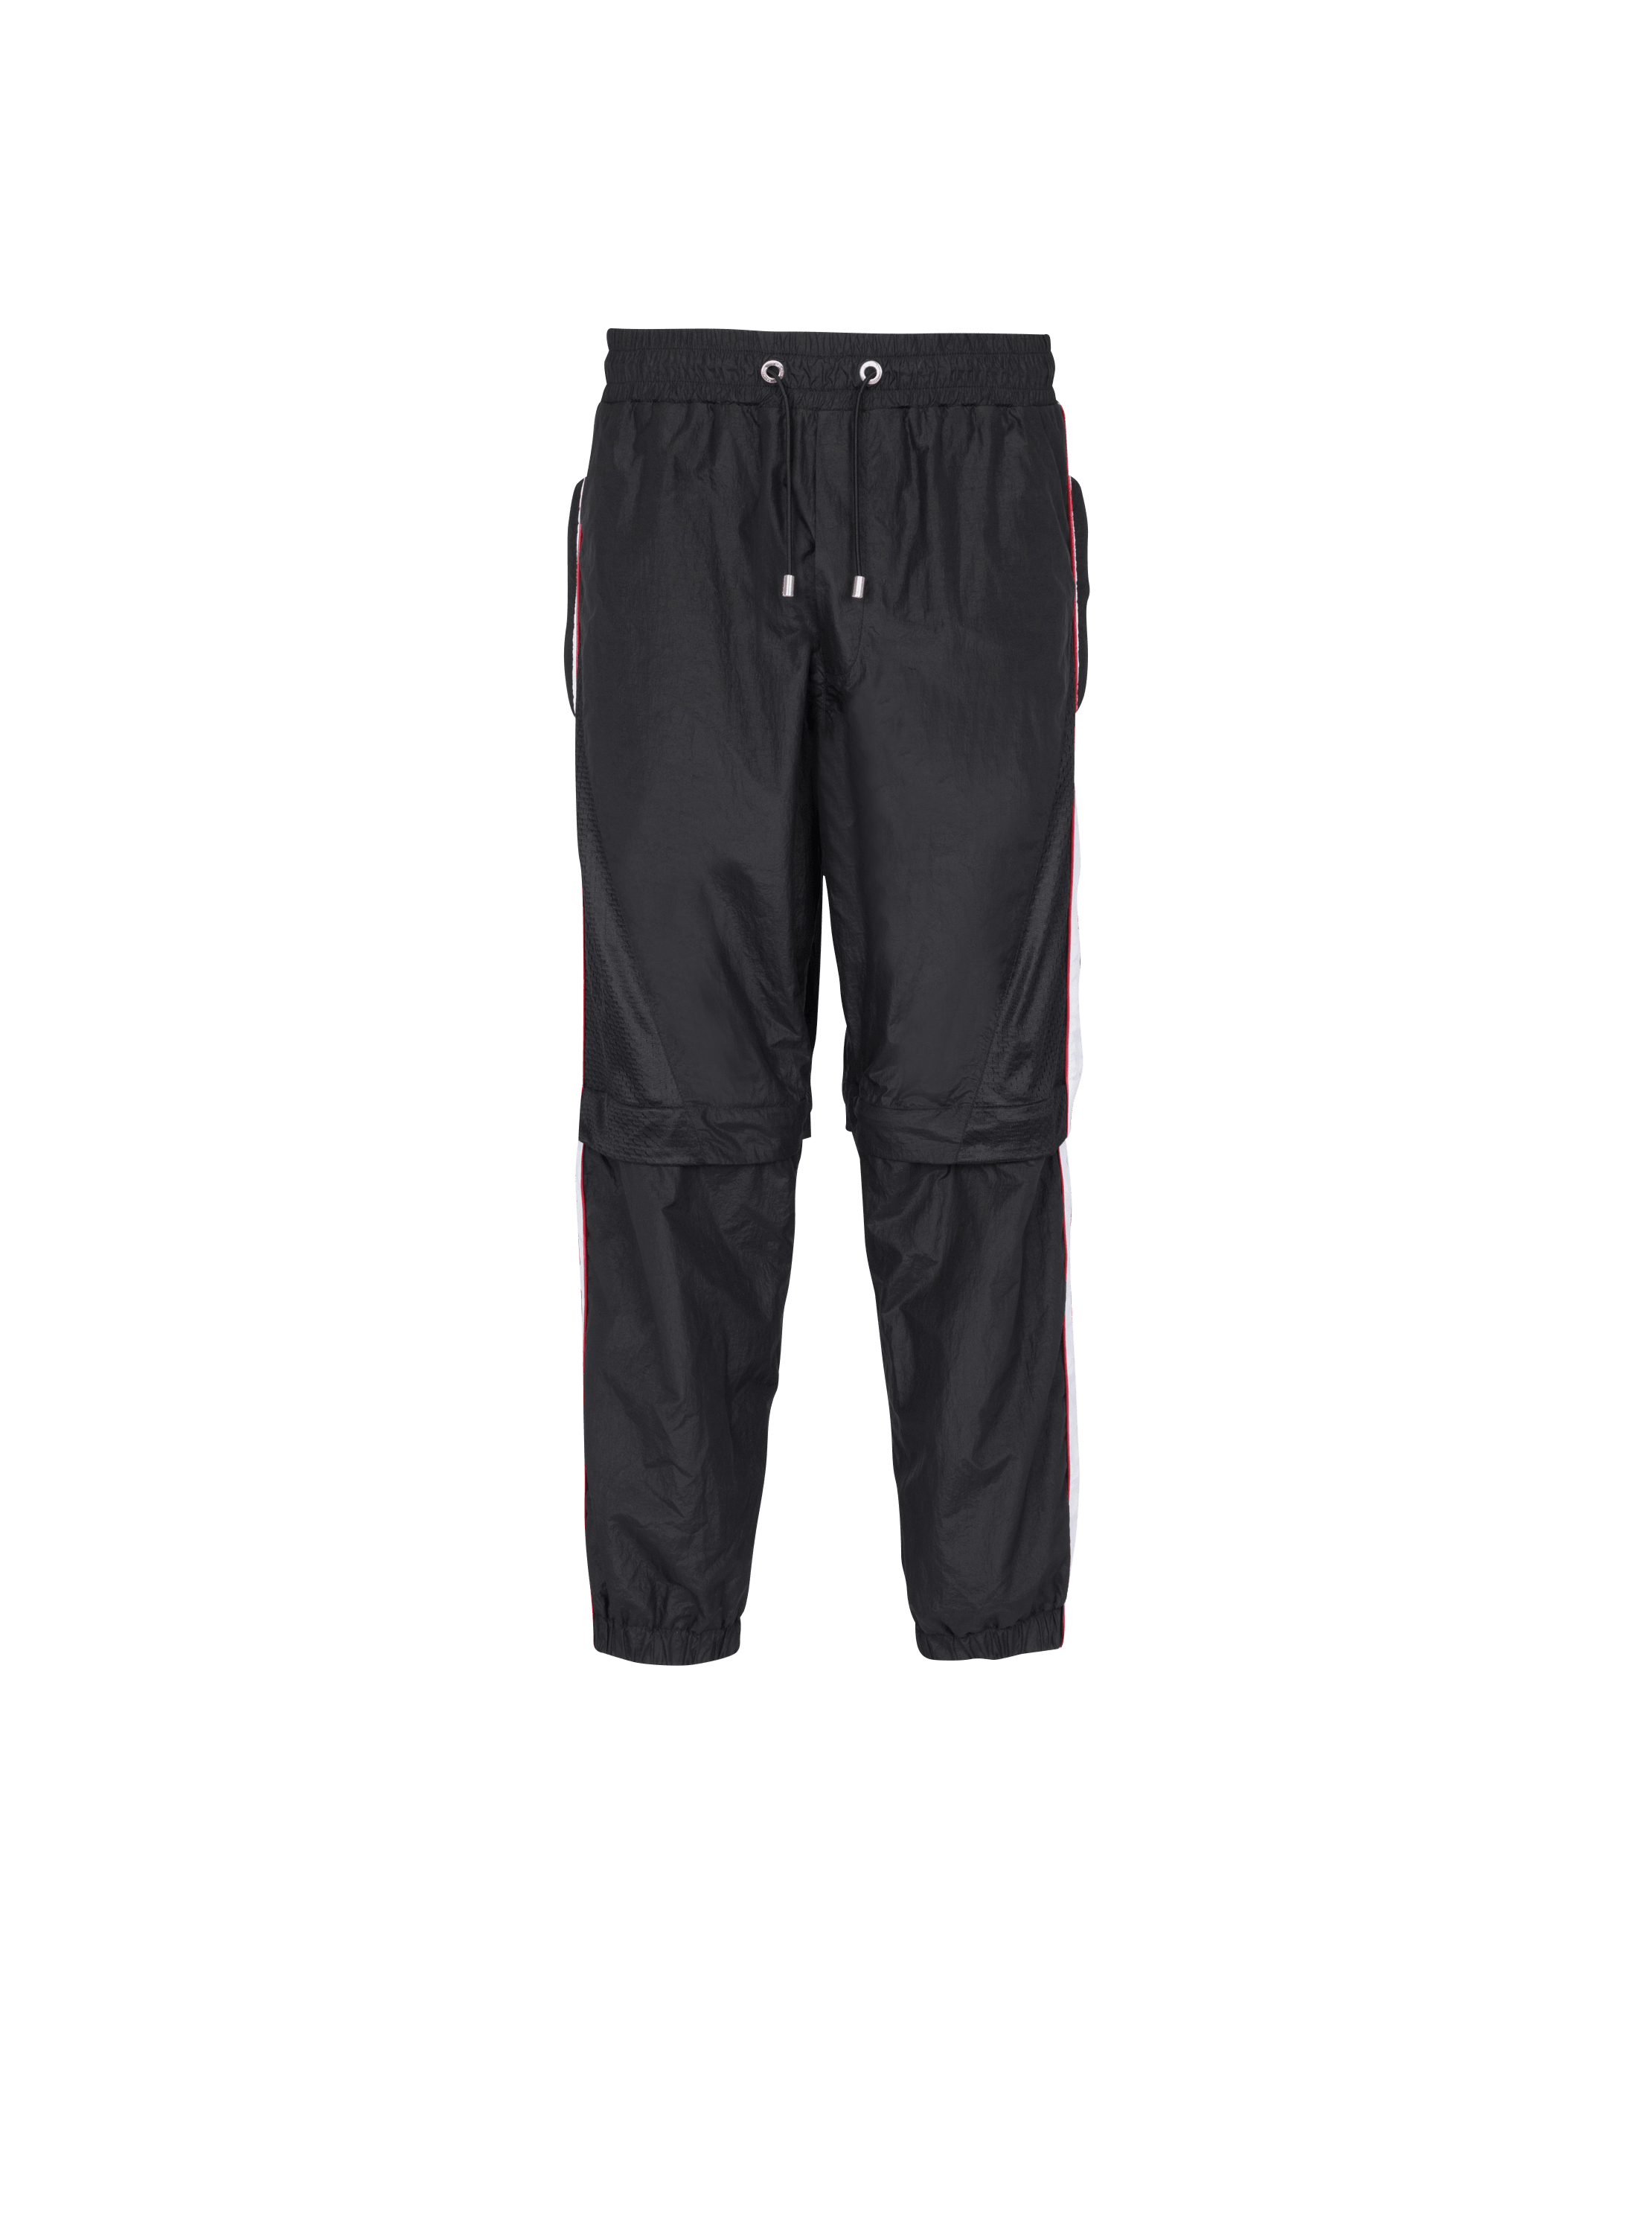 Balmain x Puma - Adjustable jogging bottoms, black, hi-res